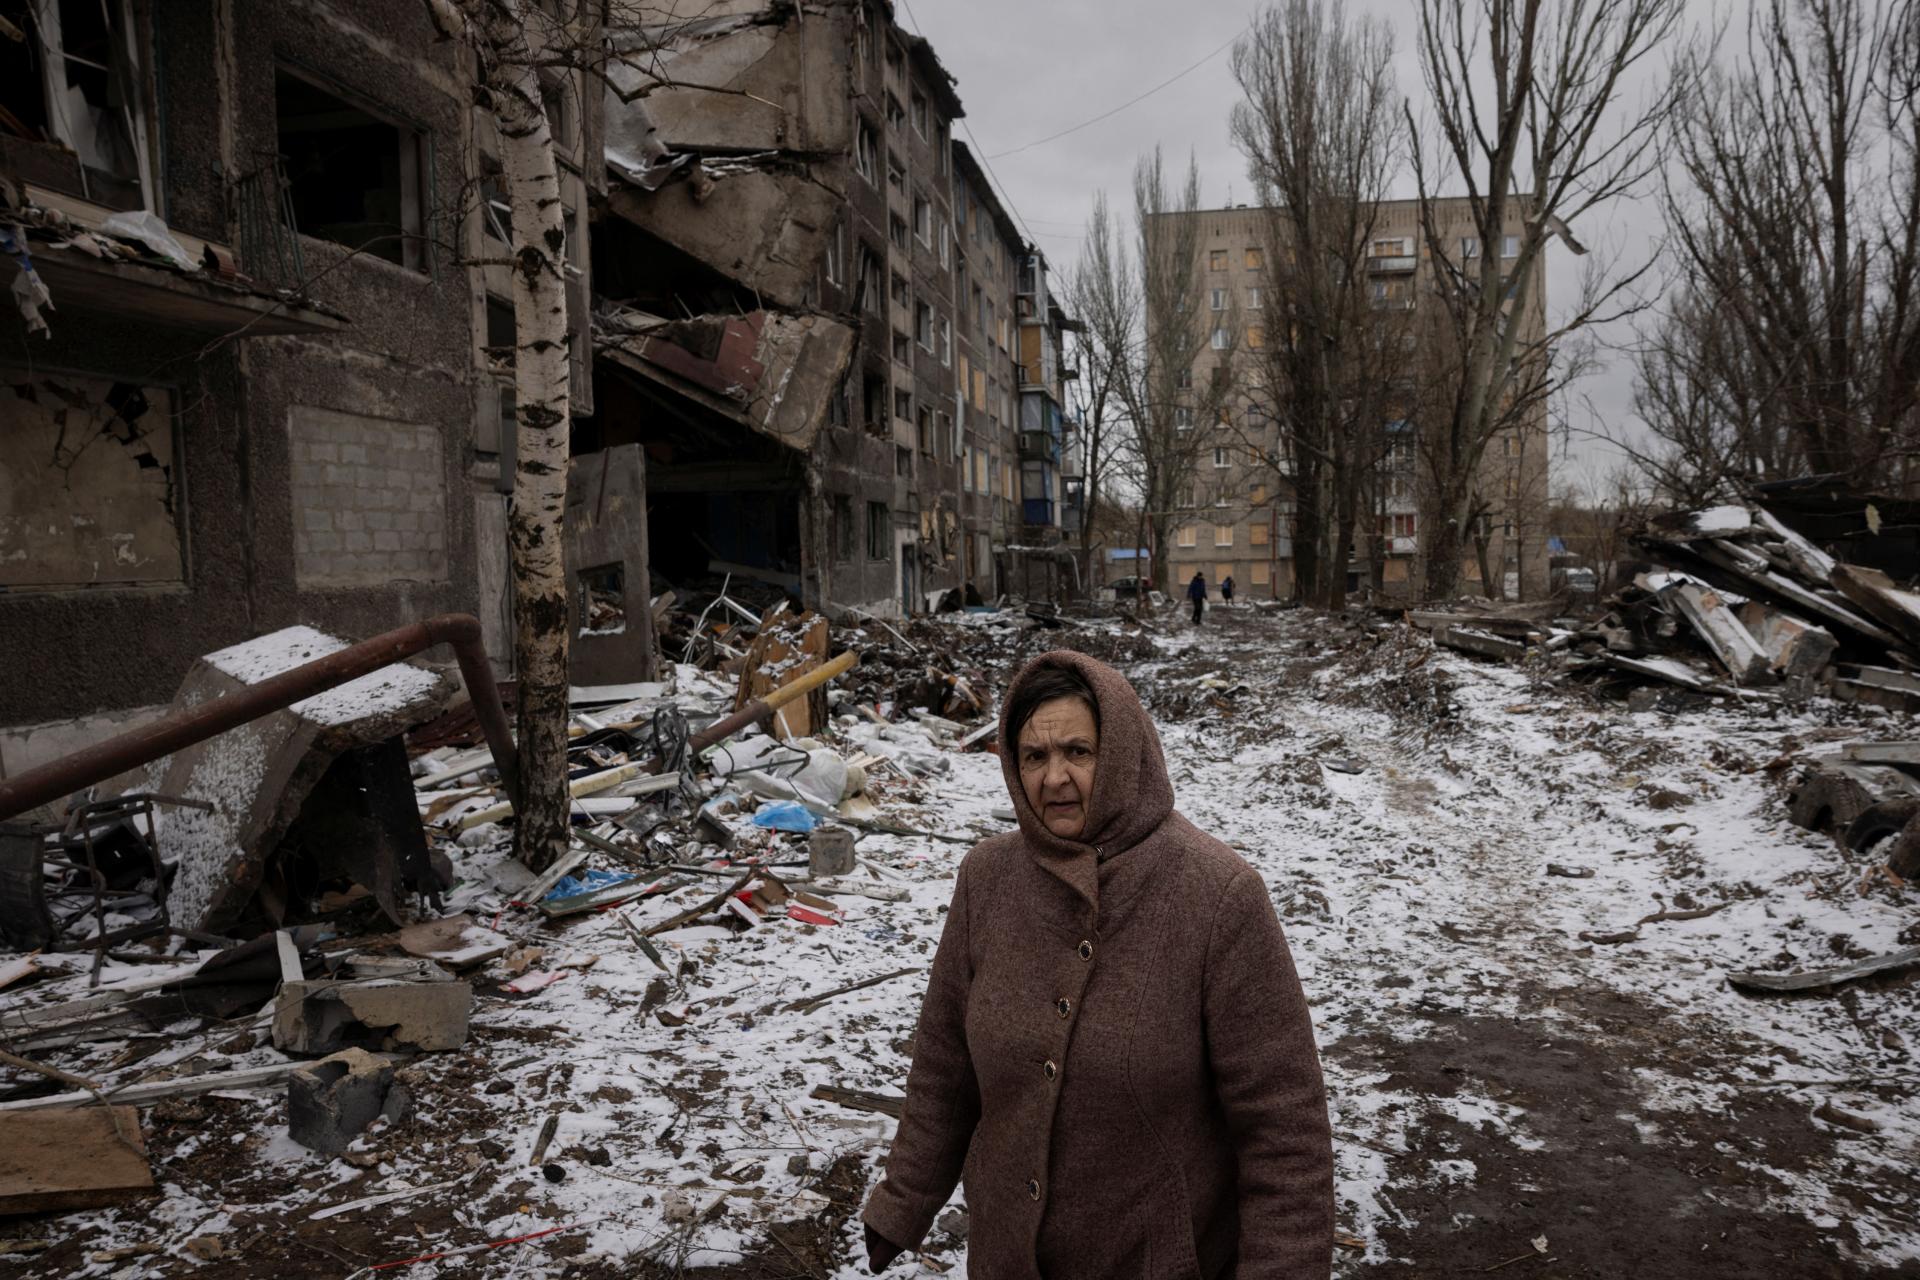 Ukrajinci sa snažia recyklovať trosky a využiť ich pri obnove budov, škody sú obrovské